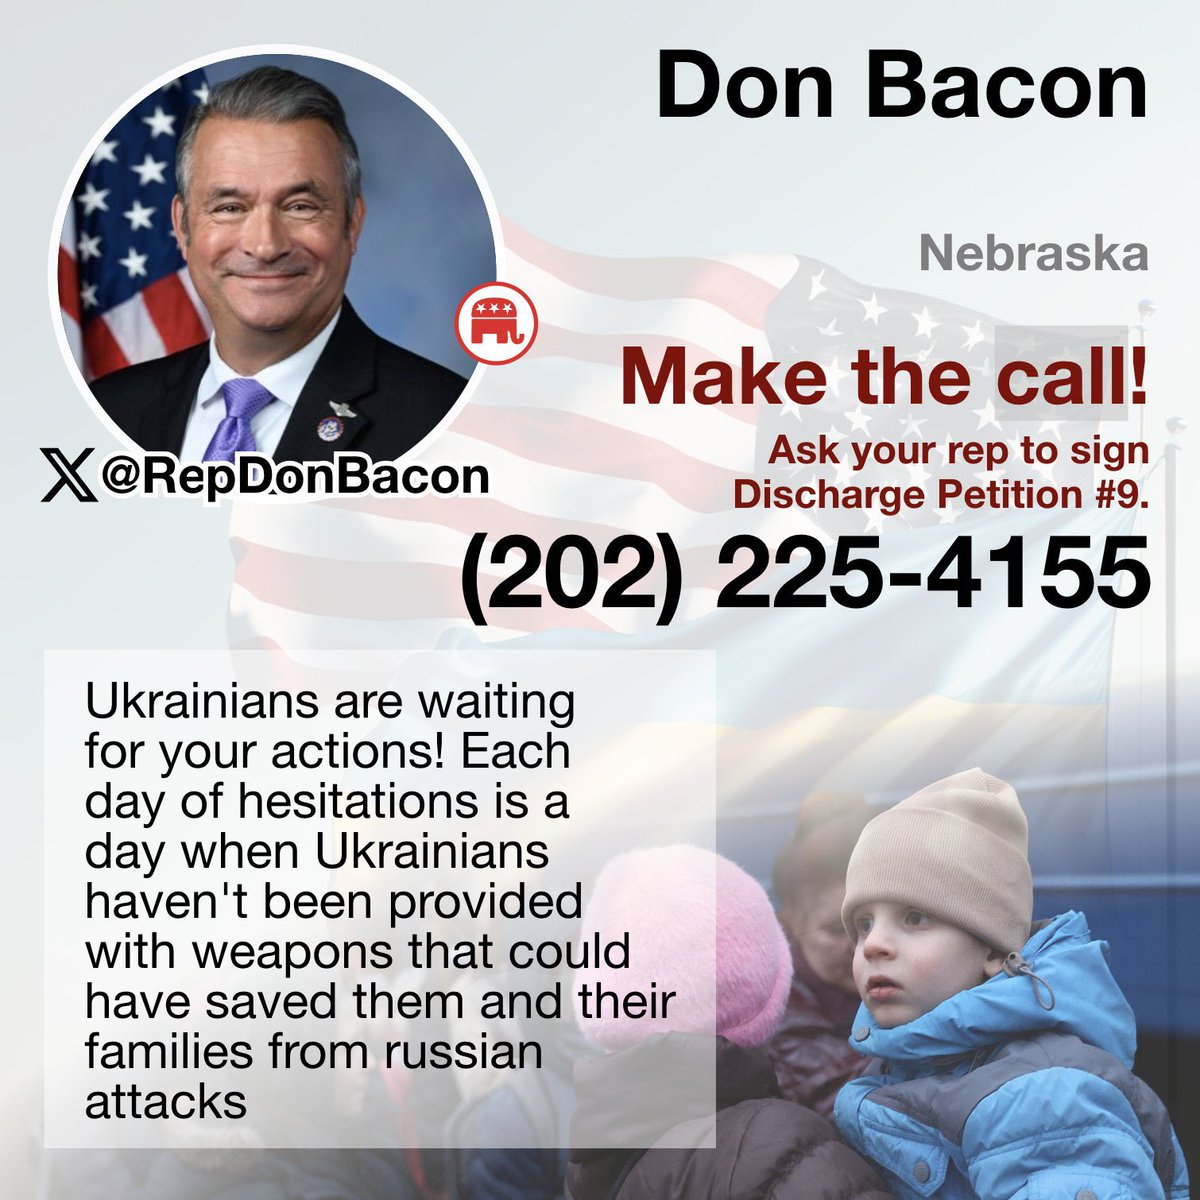 Call Rep Bacon now! 202-225-4155